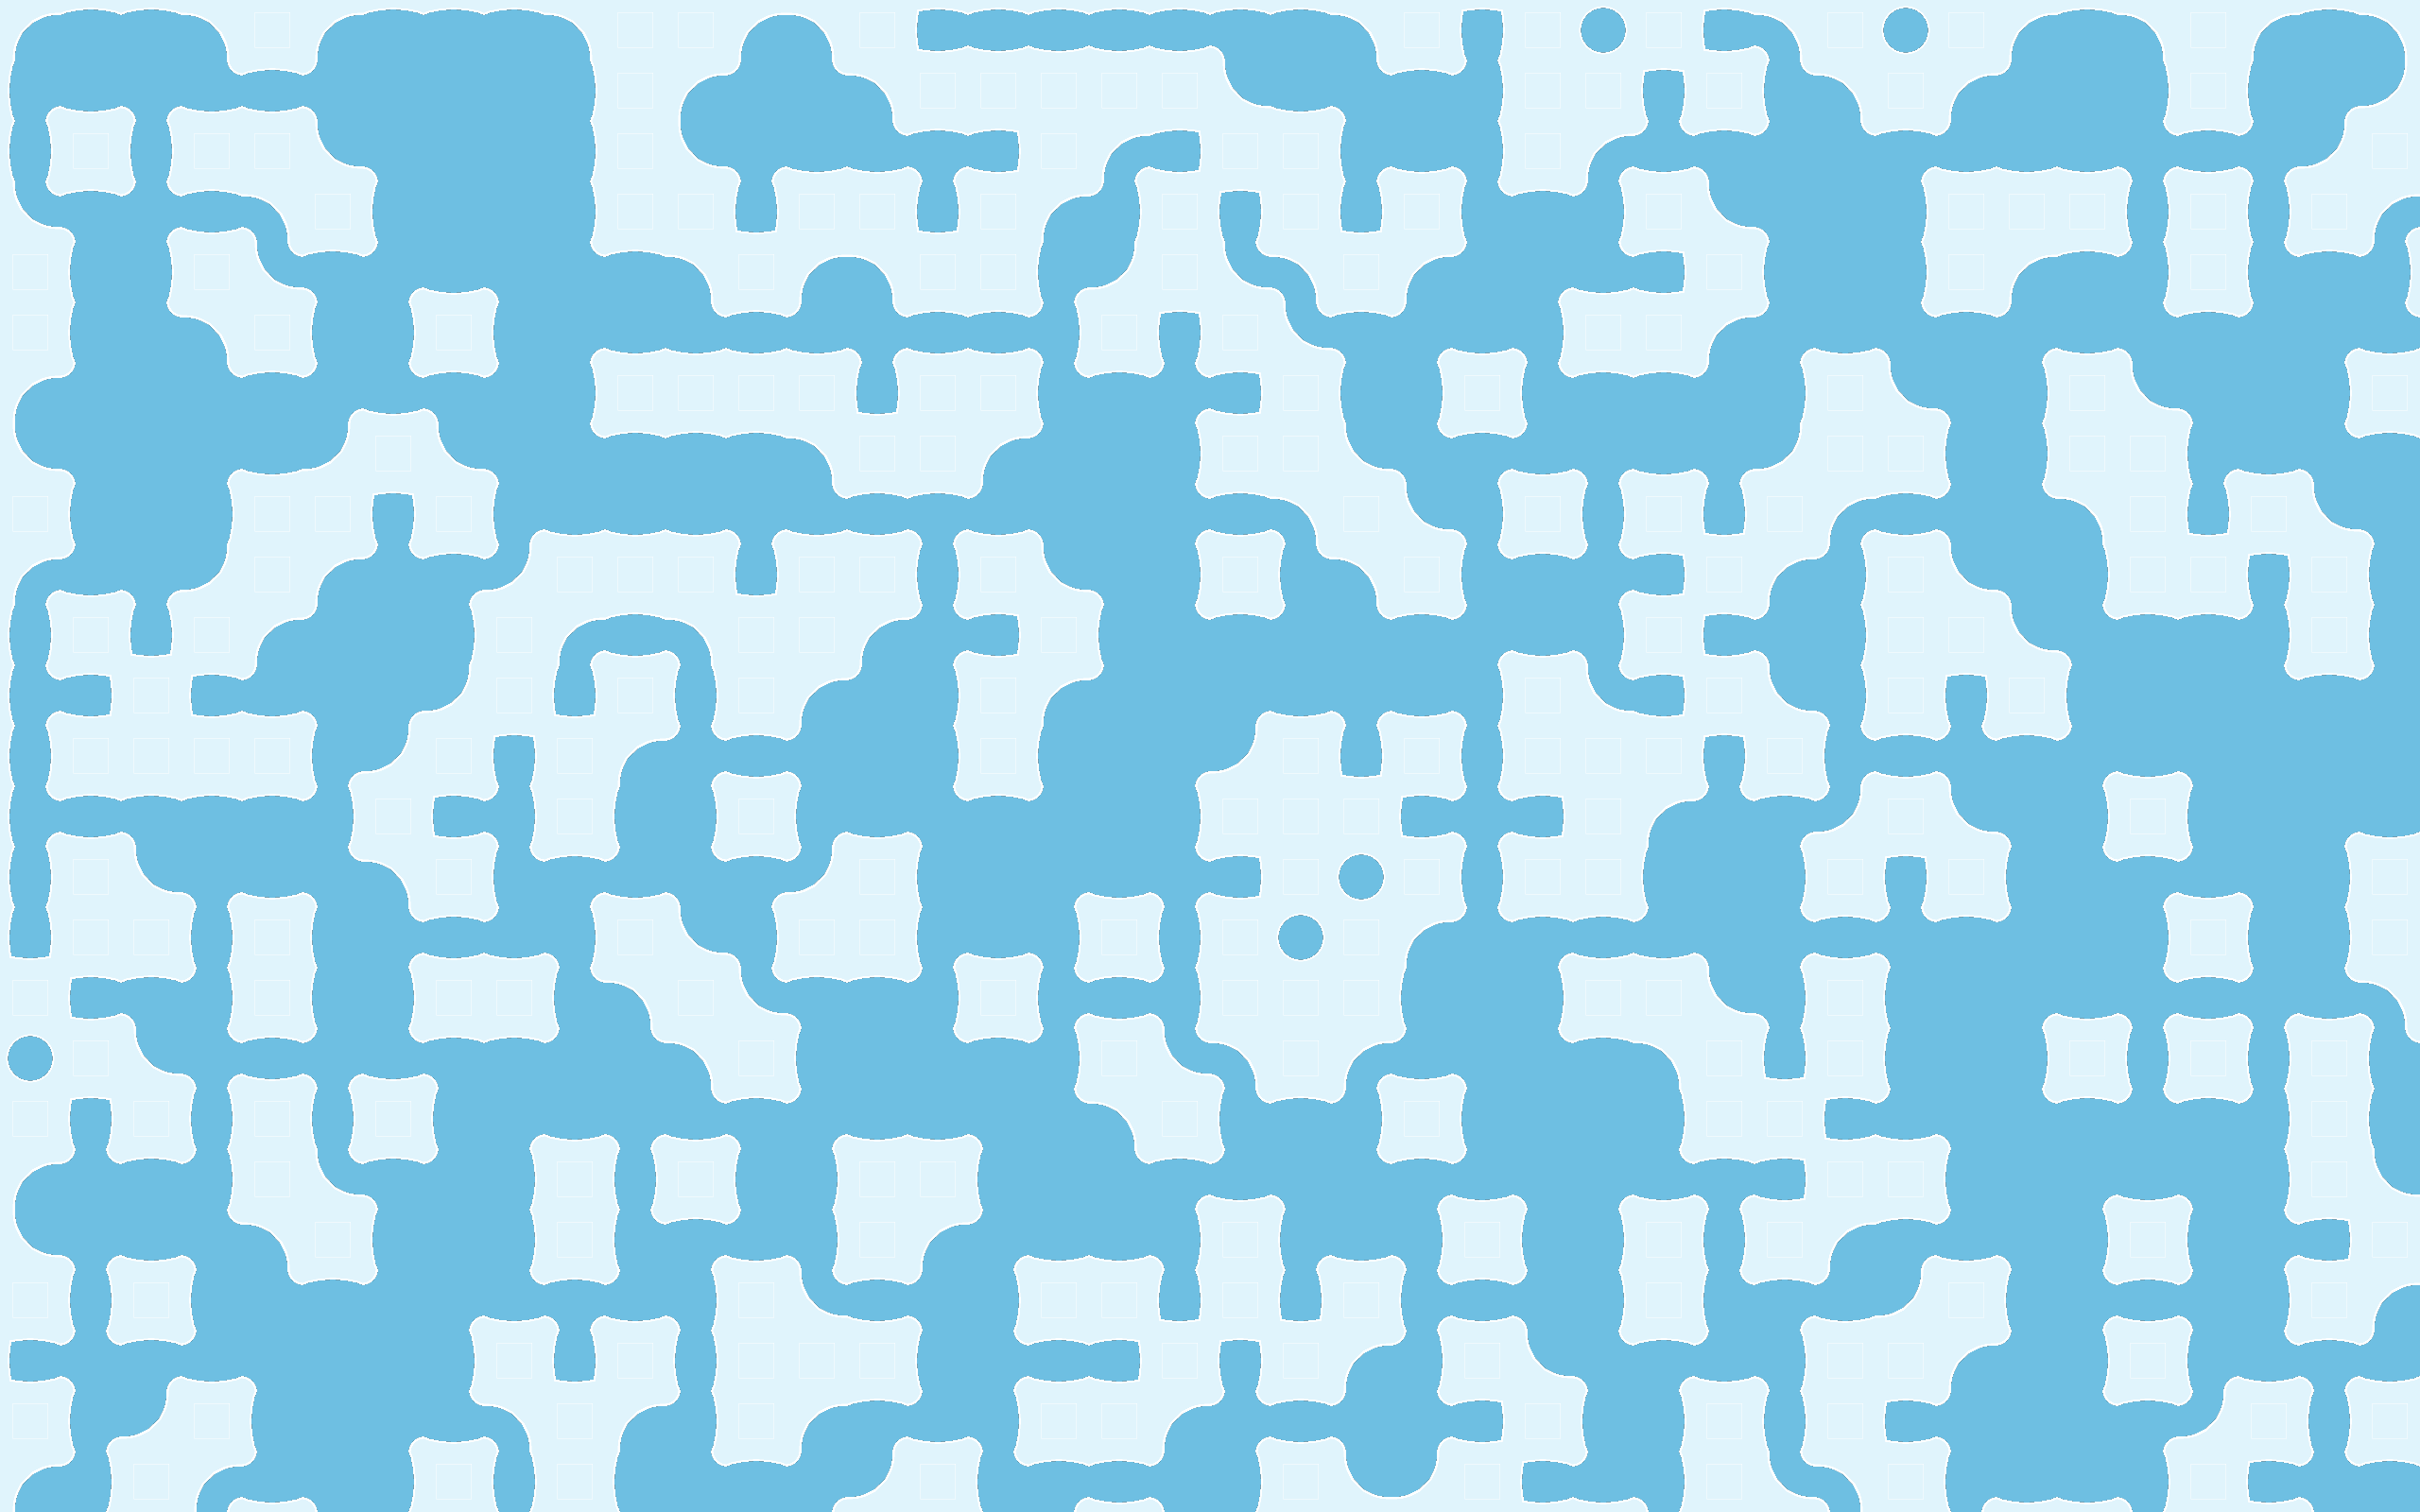 tiled-mapGrid-02.png